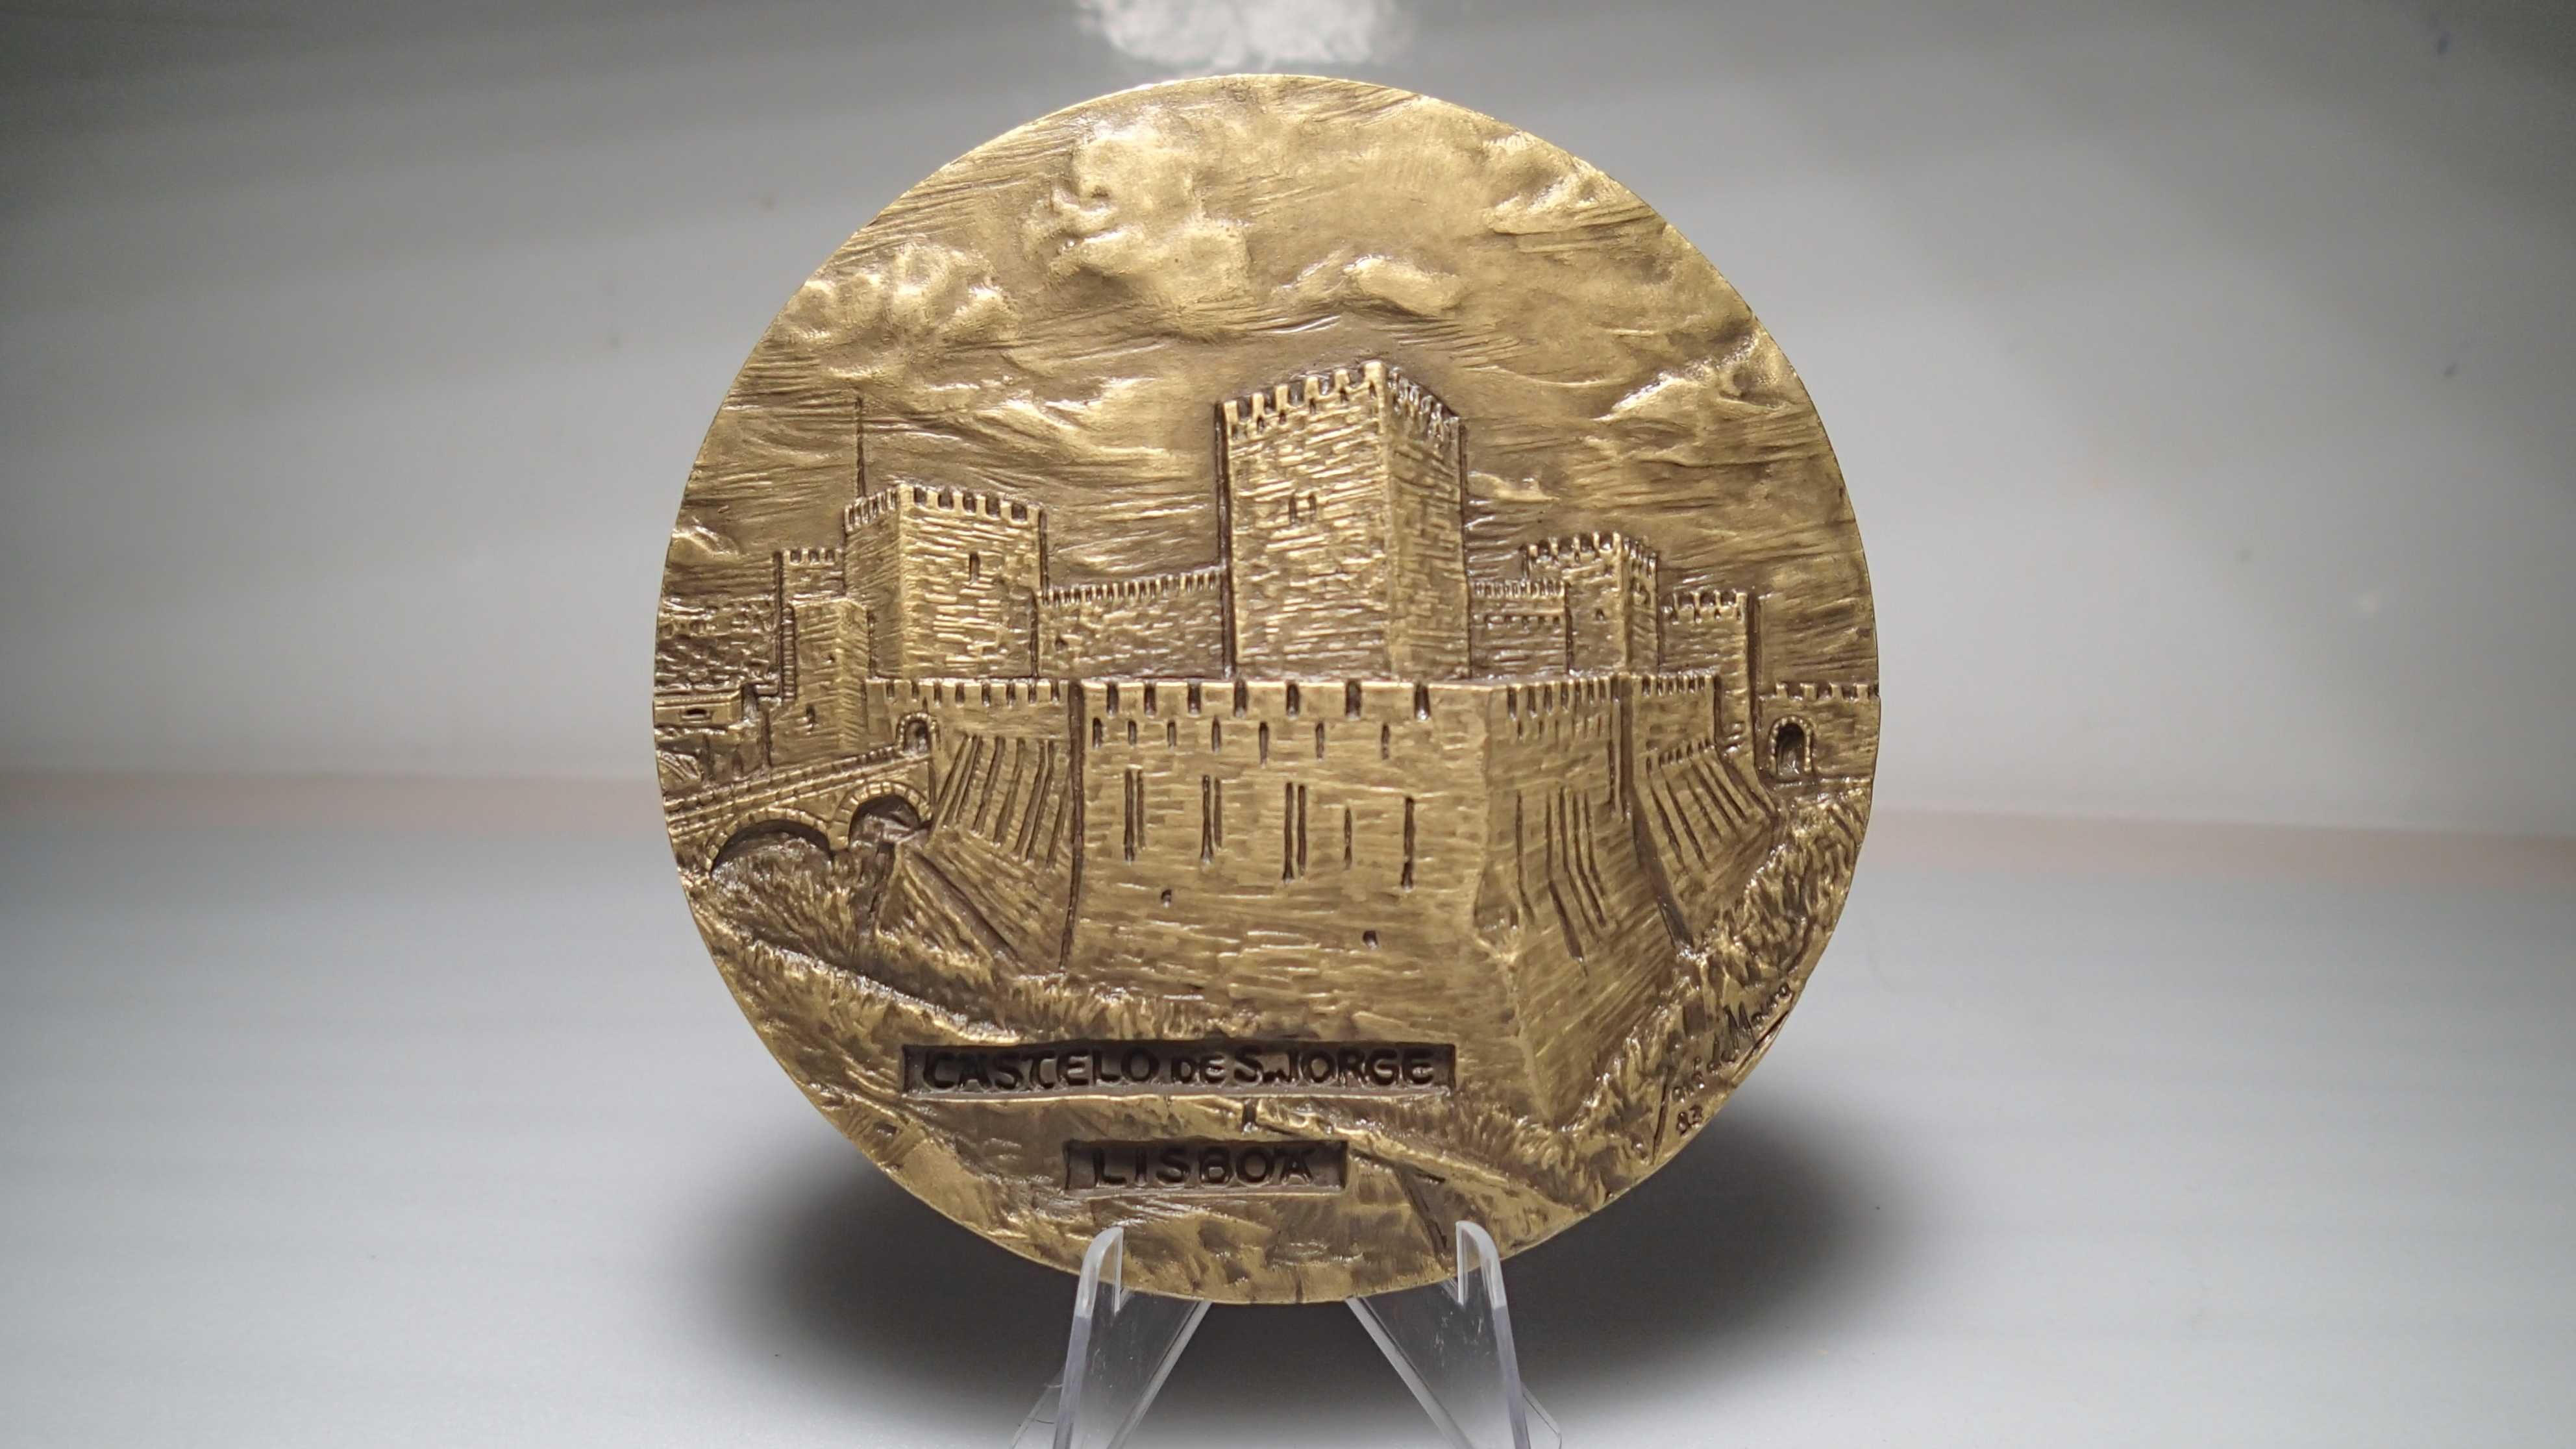 Medalhas de Bronze da Cidade de Lisboa